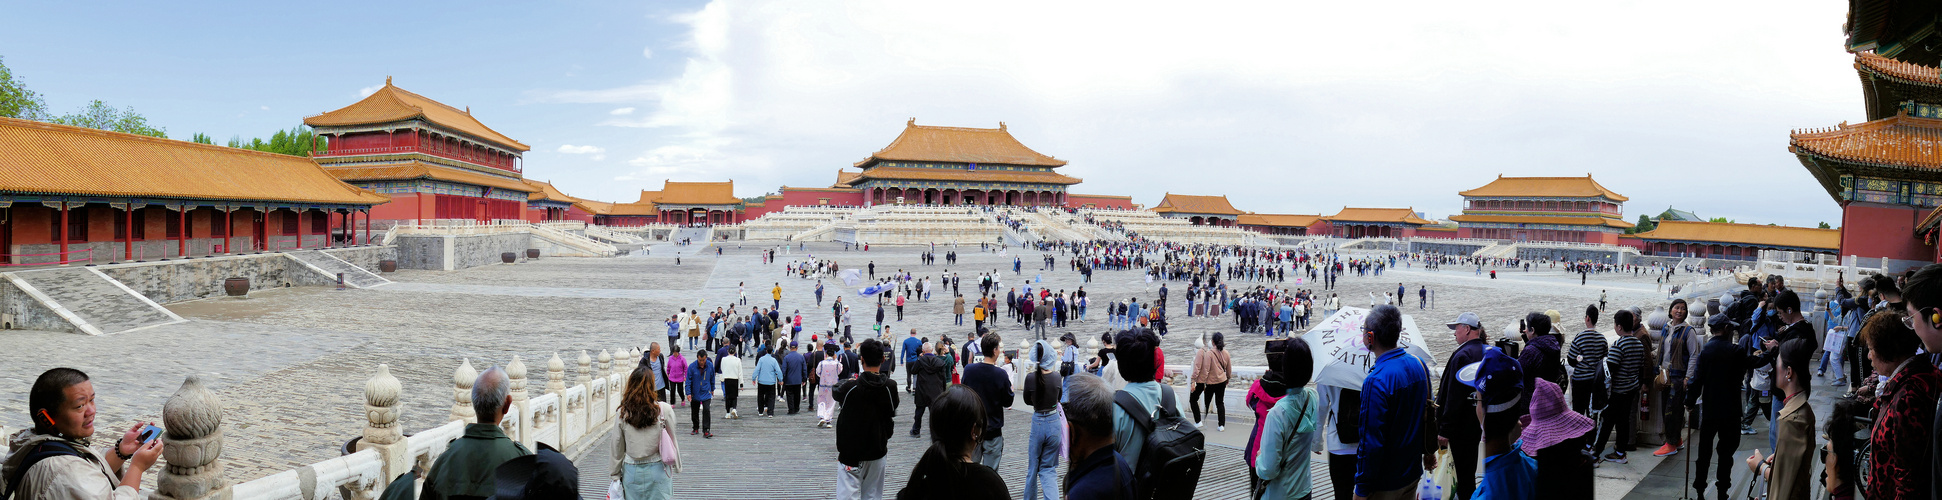 Im Kaiserpalast in Peking